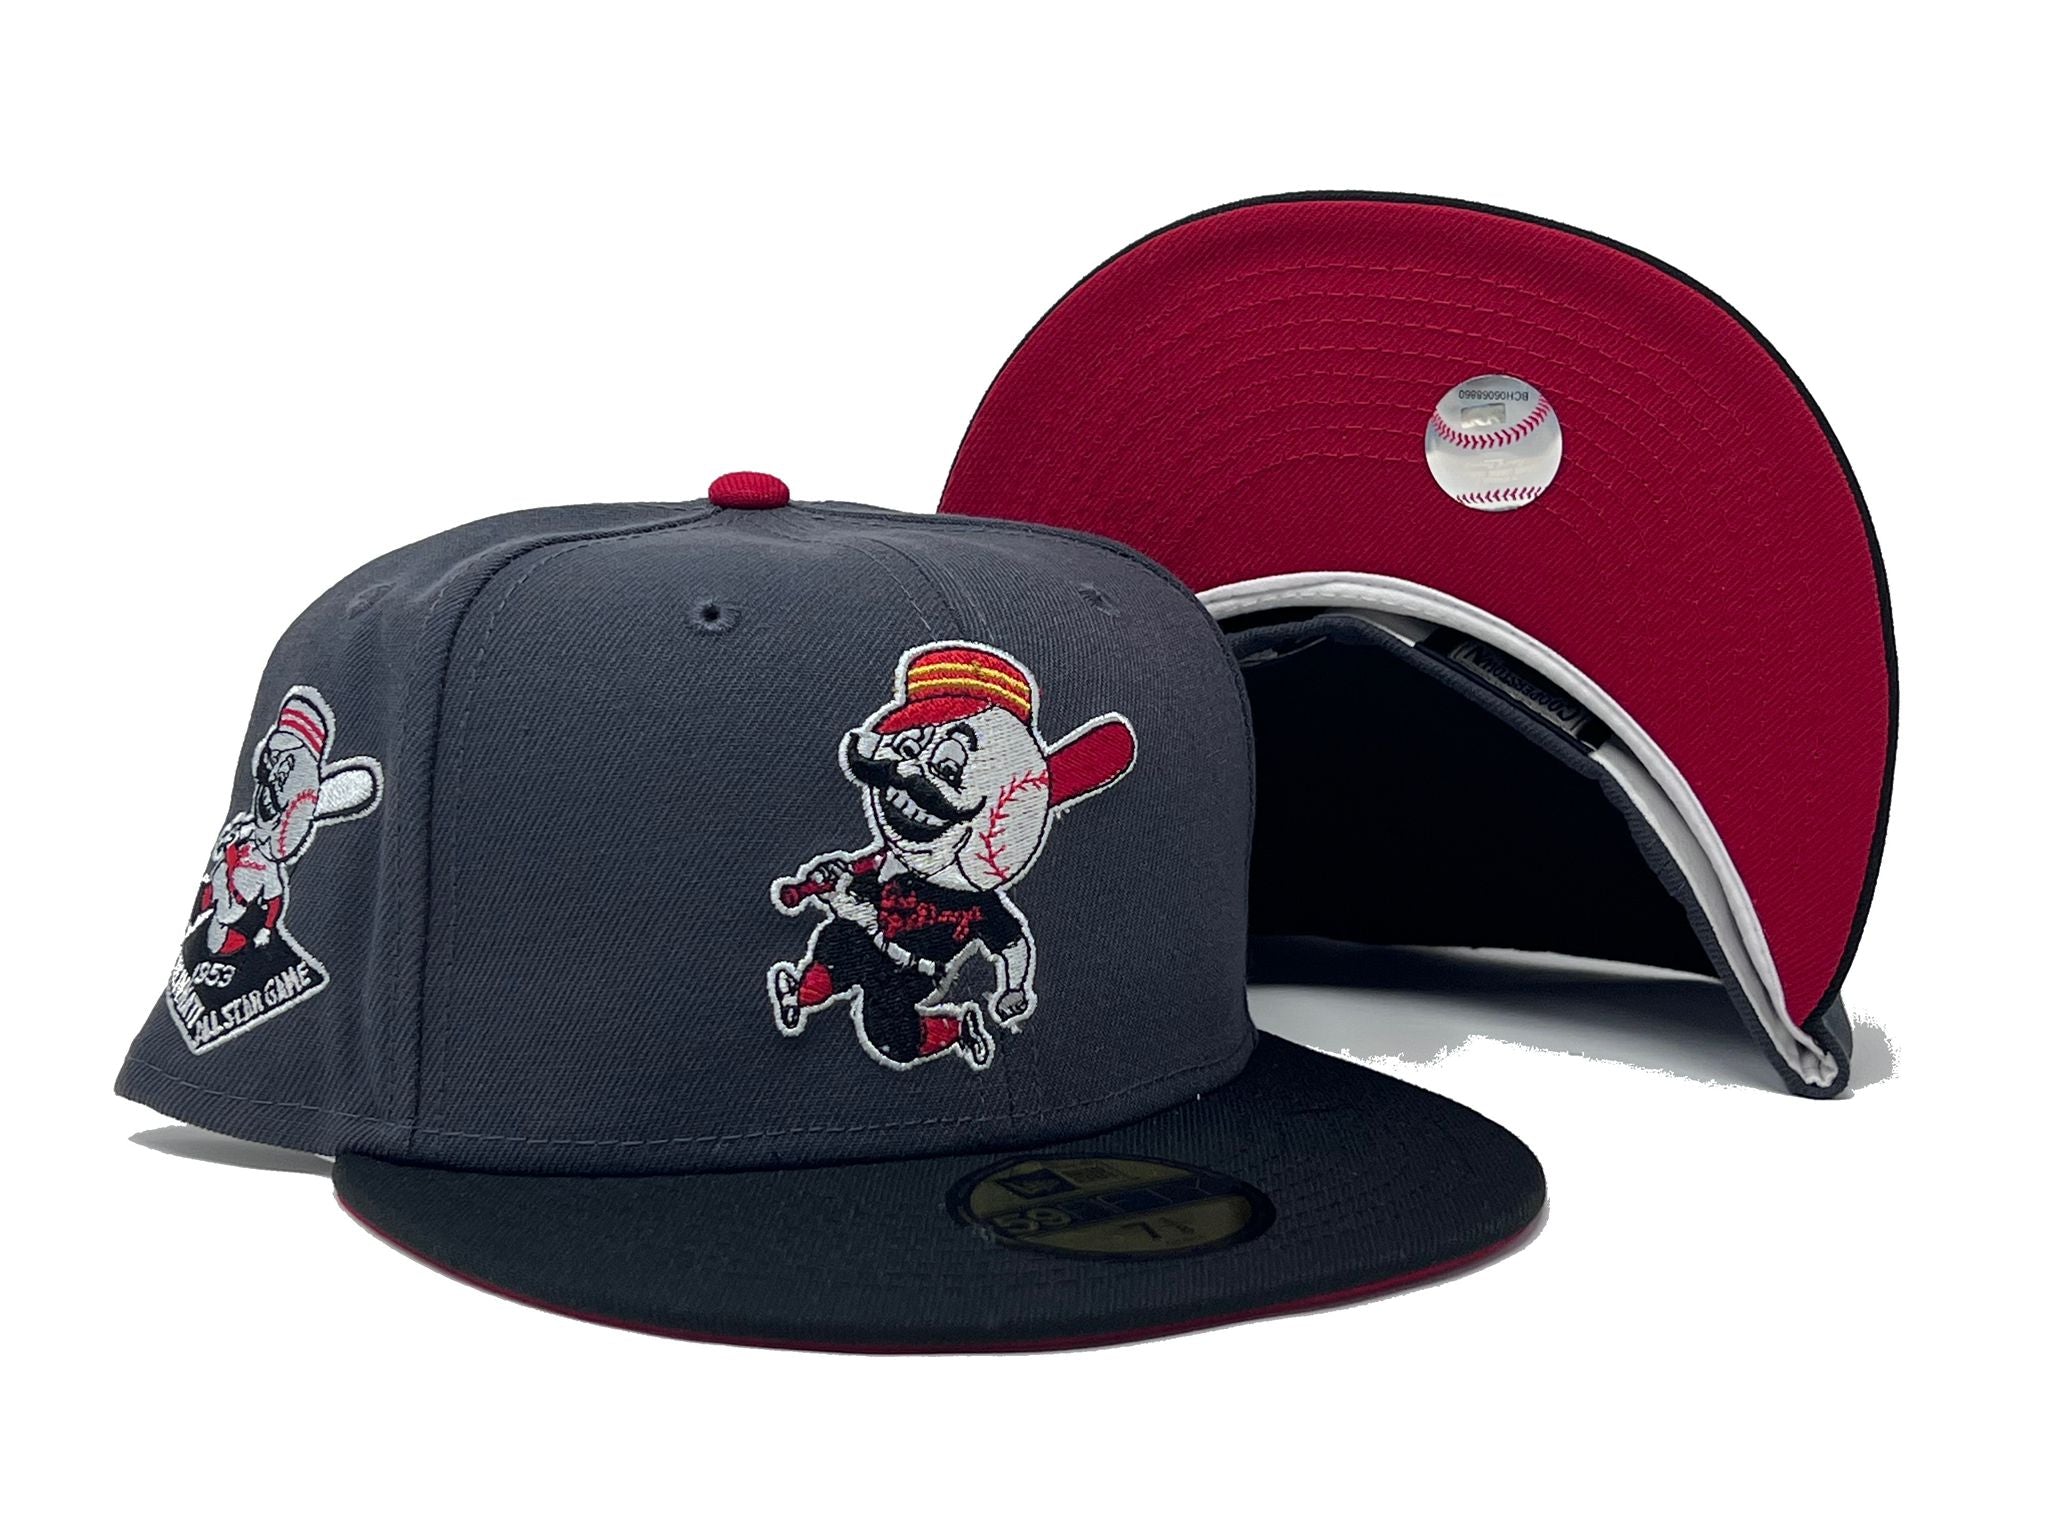 Official Cincinnati Reds All Star Game Hats, MLB All Star Game Collection, Reds  All Star Game Jerseys, Gear